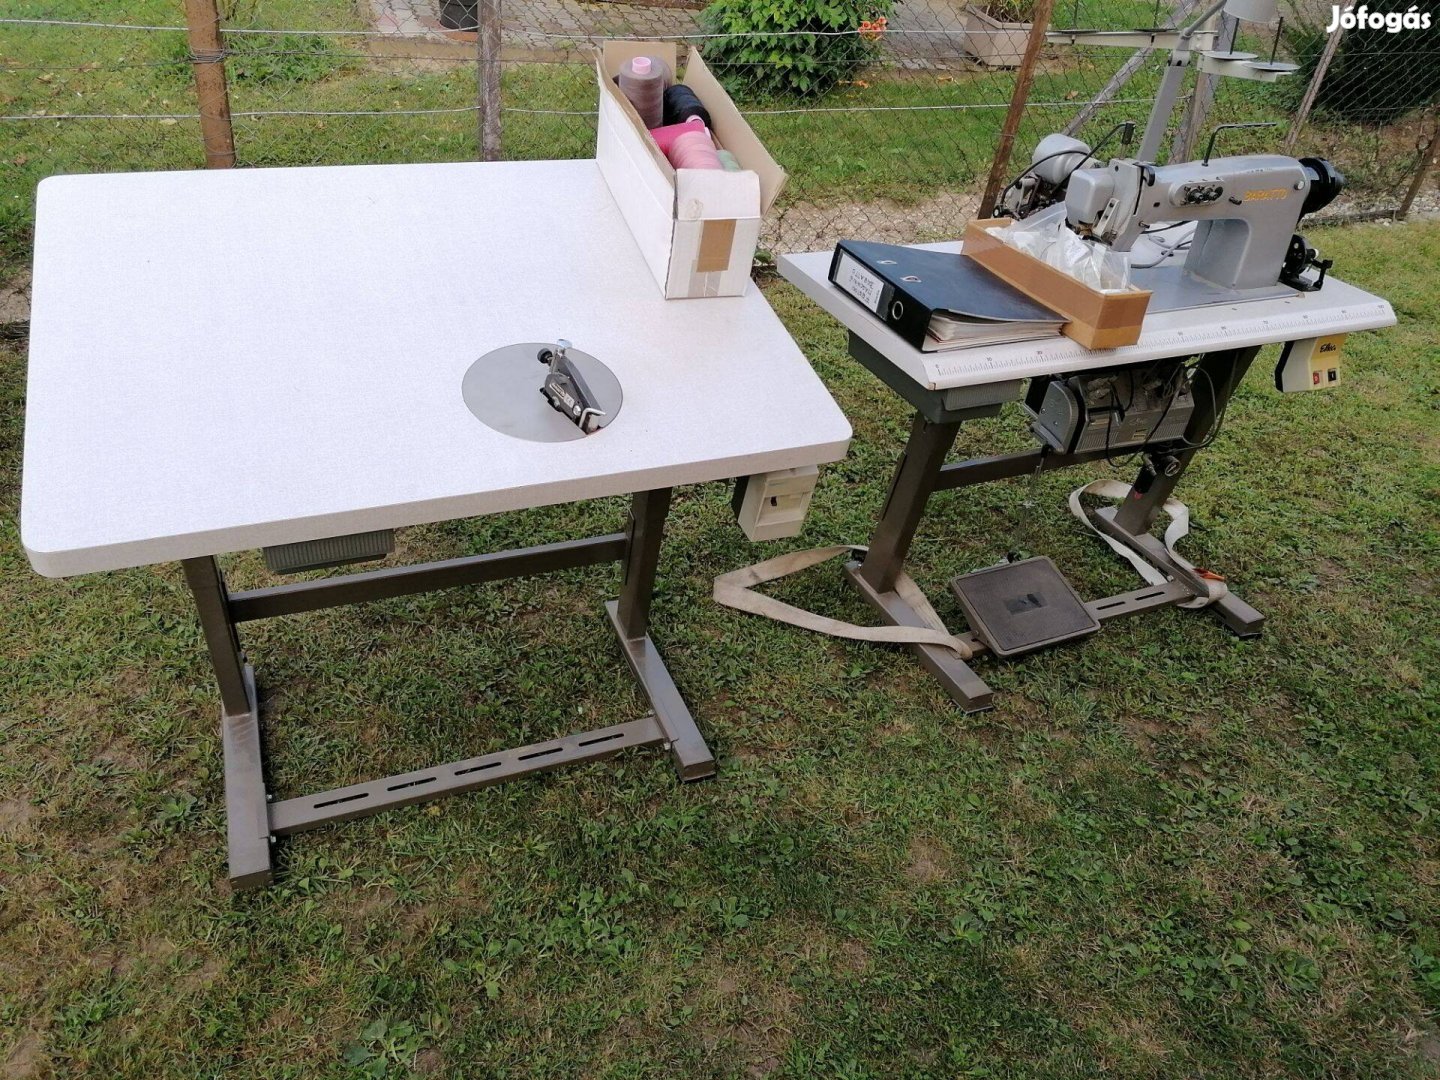 Asztali varrógép, szabászgép, varró - hímző gép nagyteljesítményű Bara